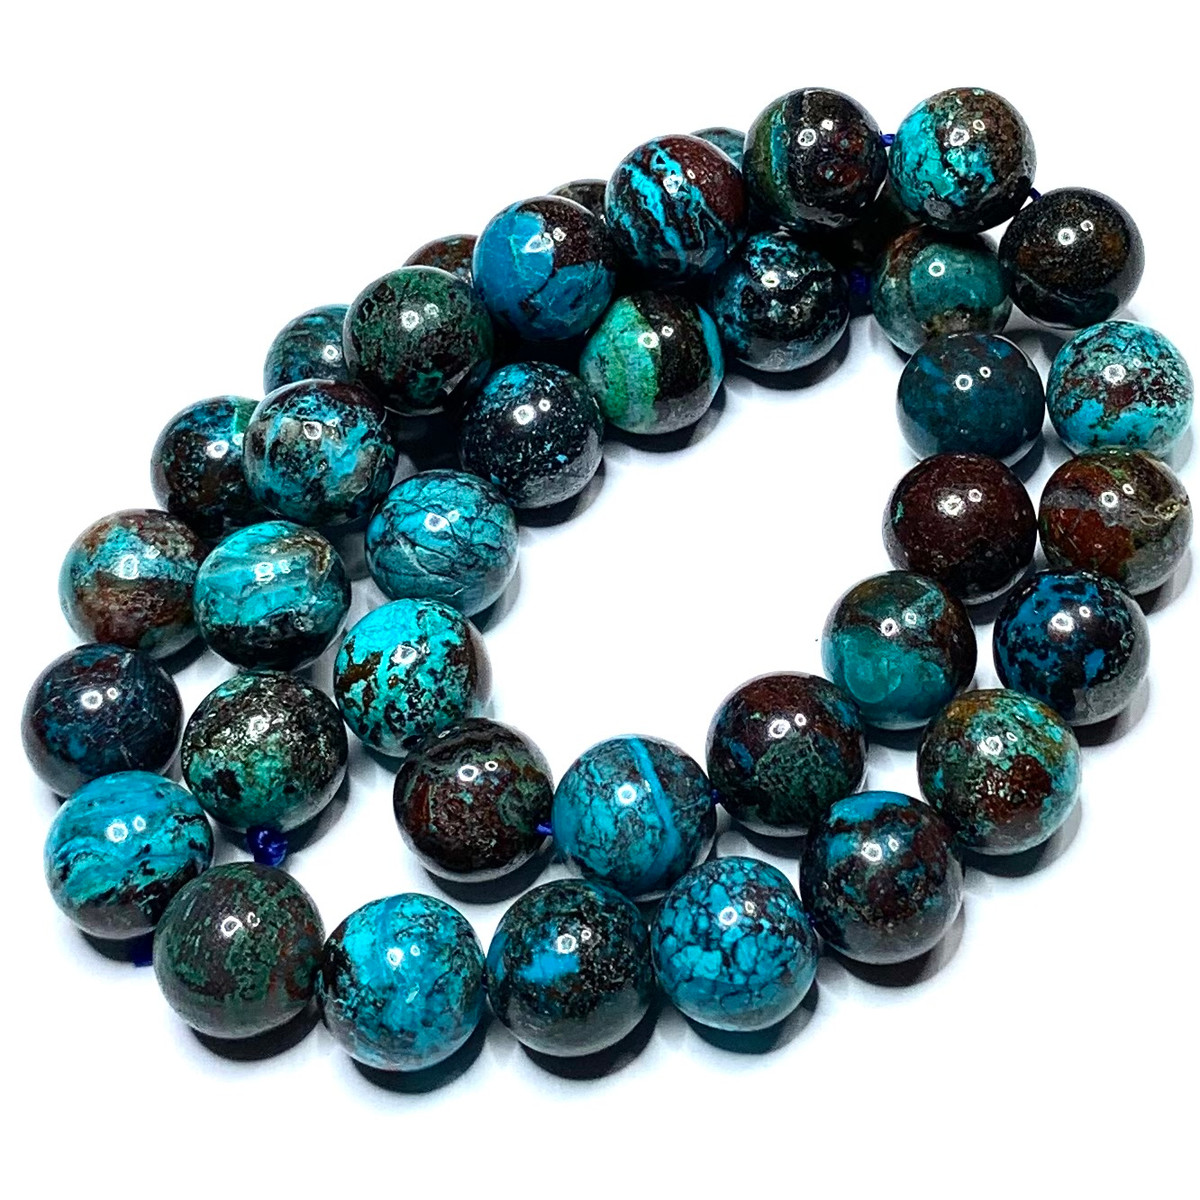 Albite Jade, Albite Jade Beads